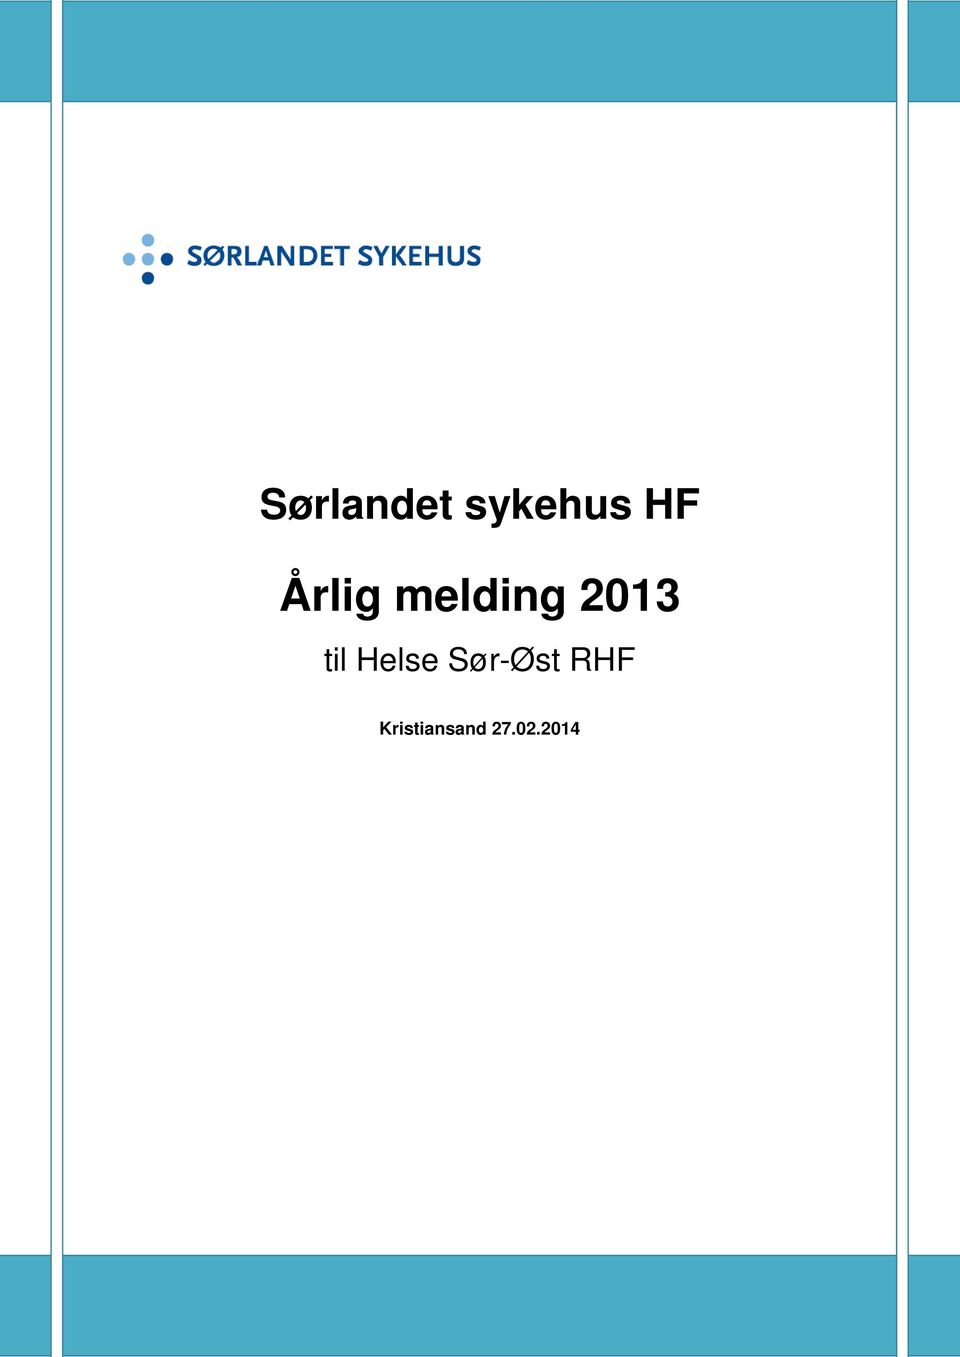 RHF Kristiansand 27.02.